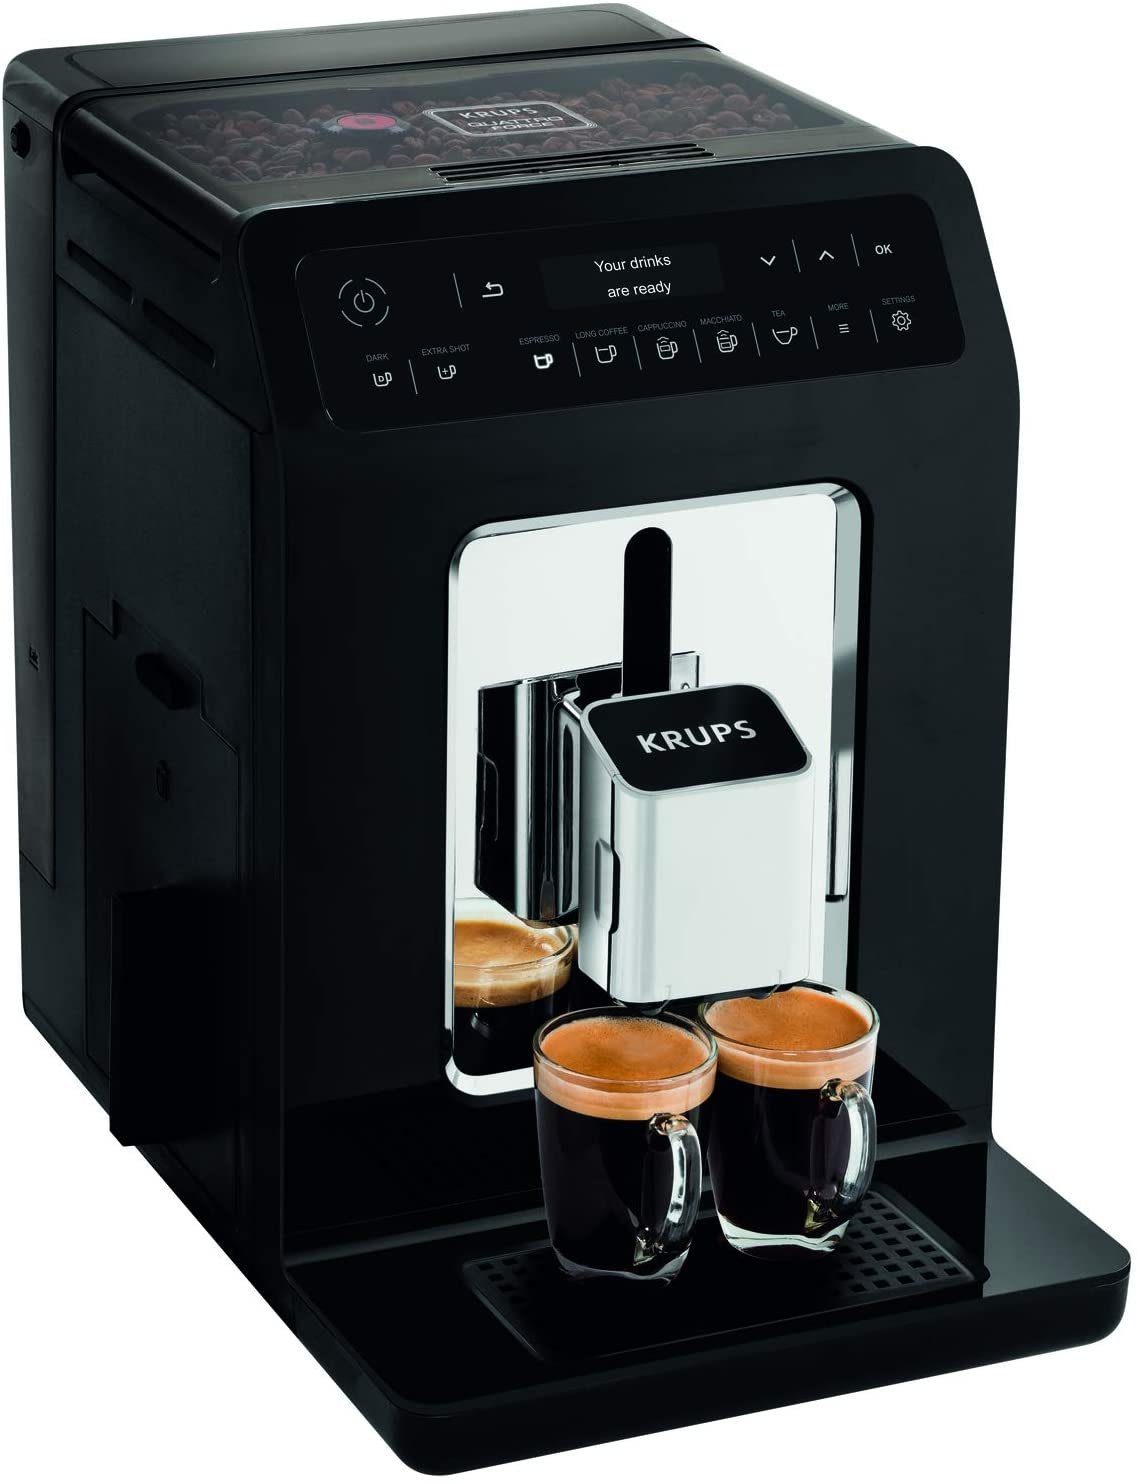 Krups Kaffeevollautomaten online kaufen | OTTO